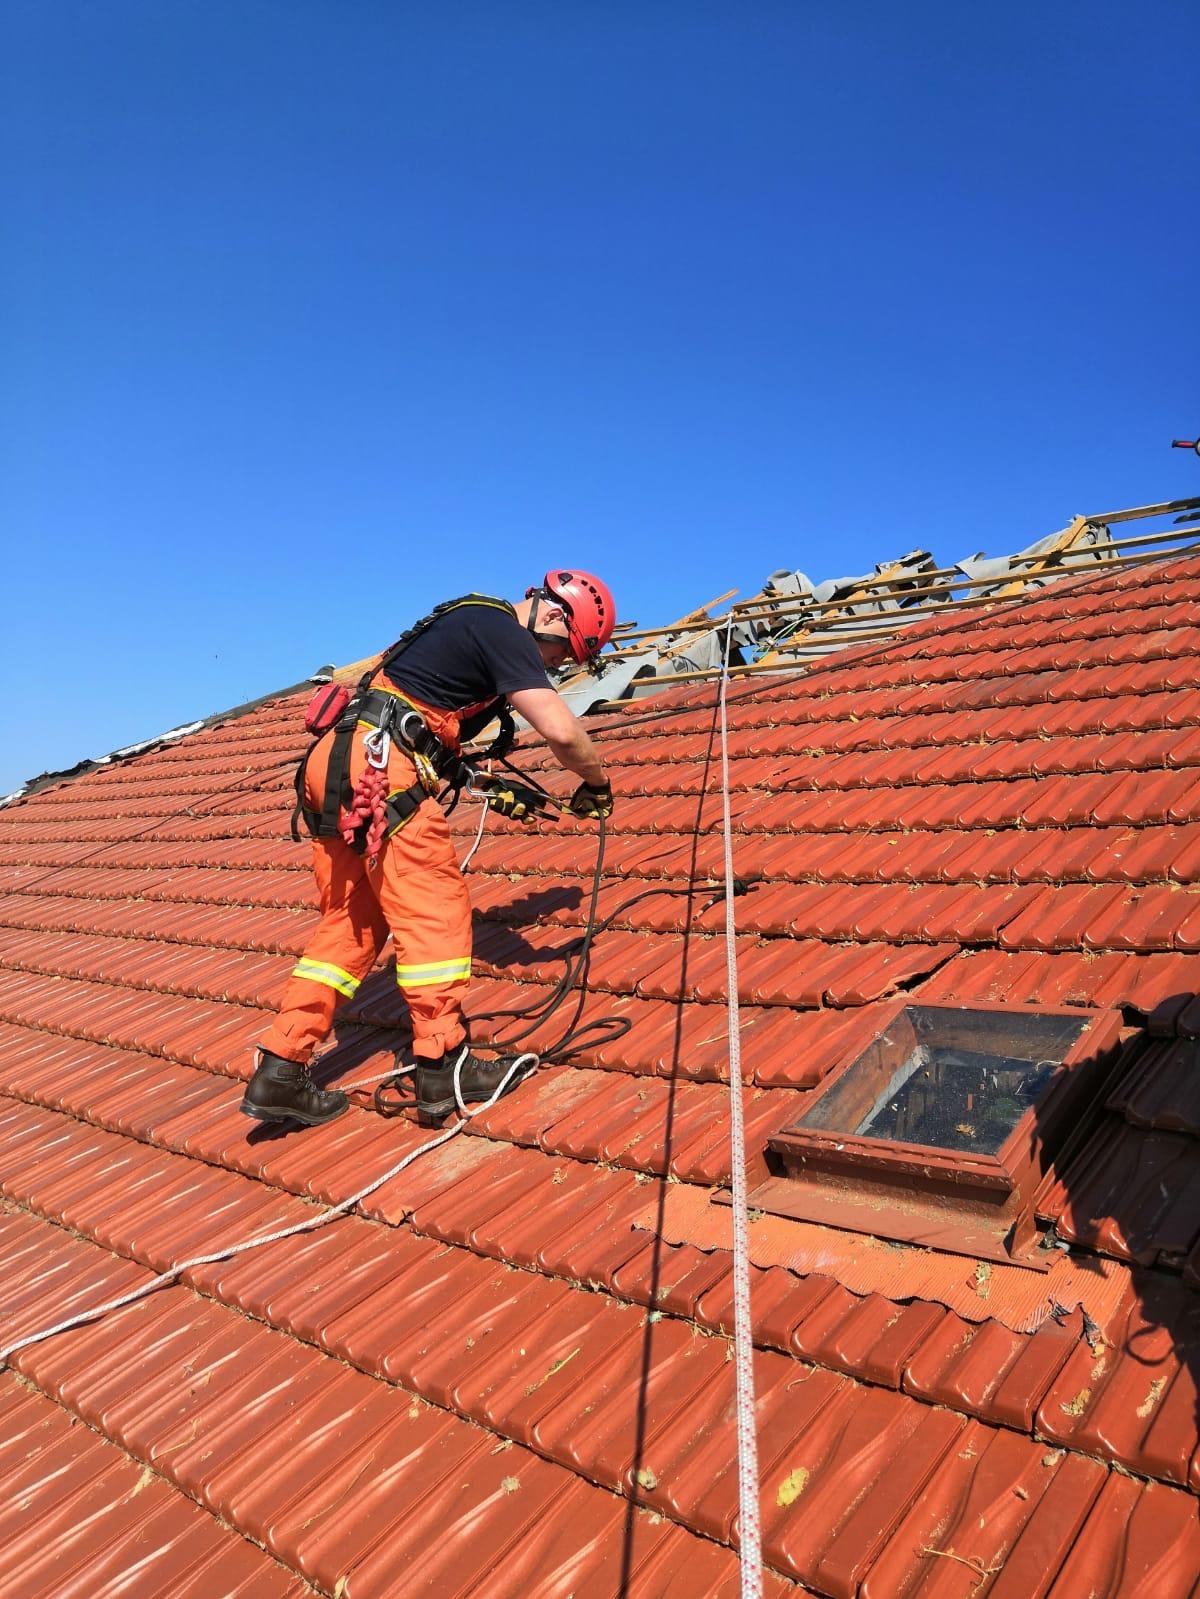 051 - při pracích na střechách se hasiči jistili lany.jpg